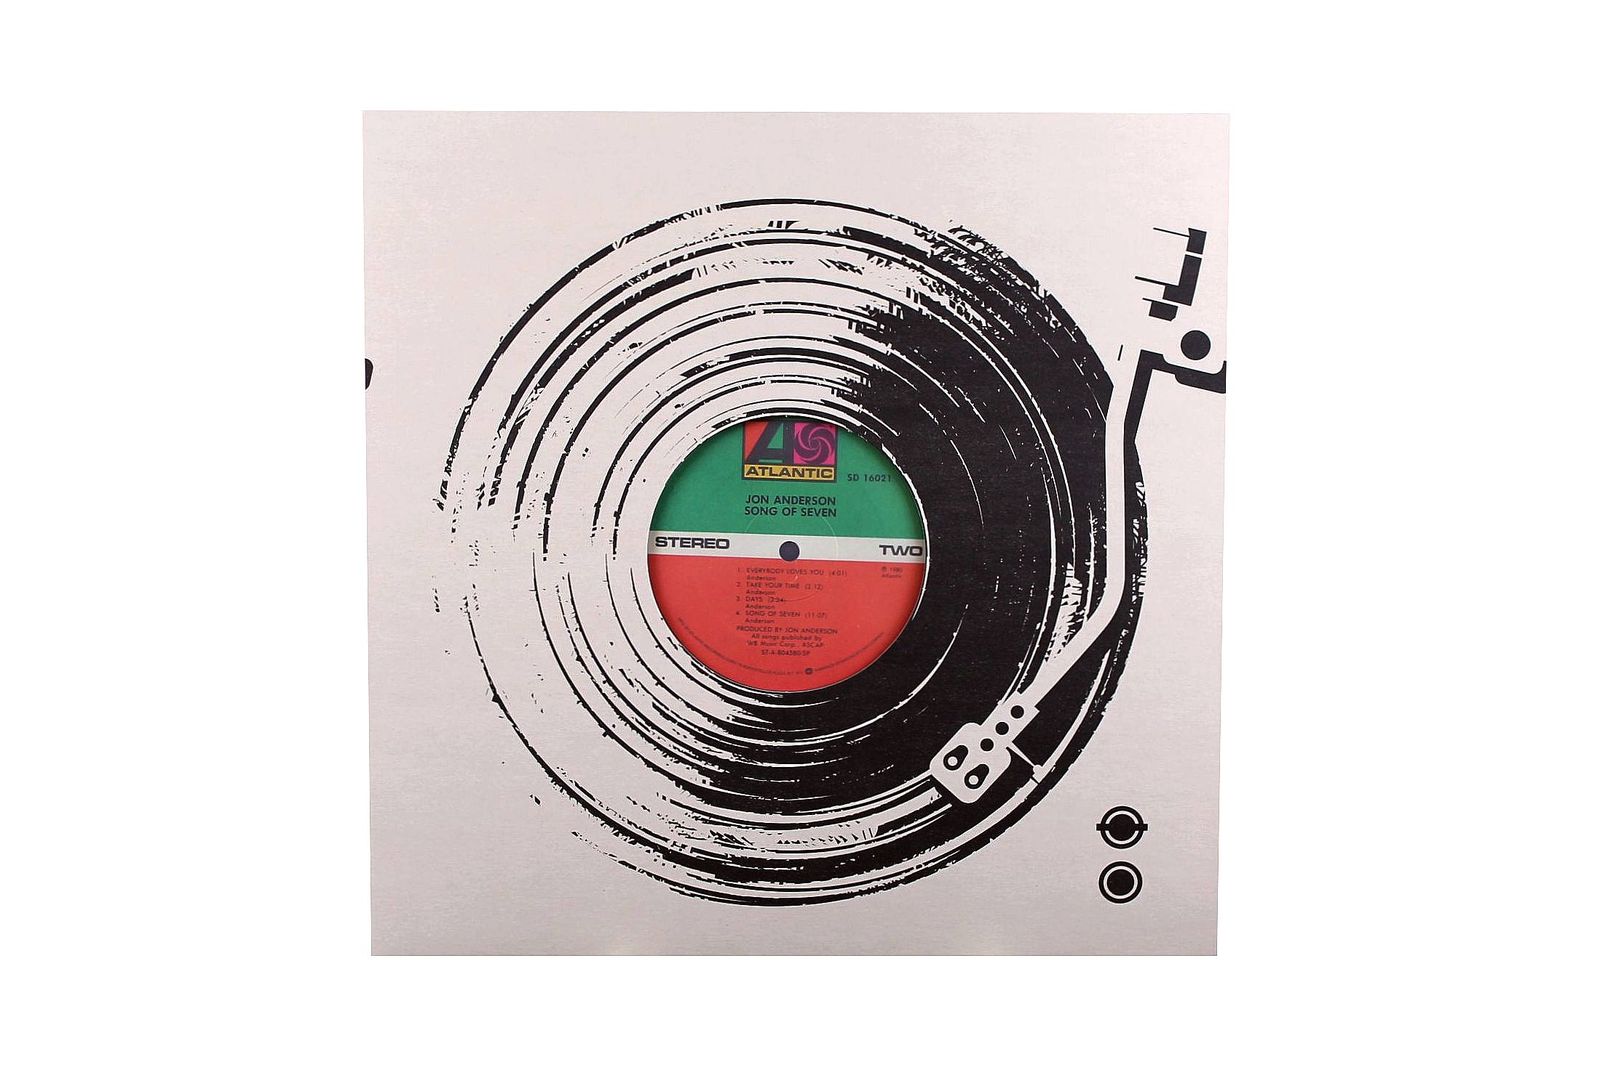 Copertina per LP 12" decorata con disegno stilizzato di un giradischi